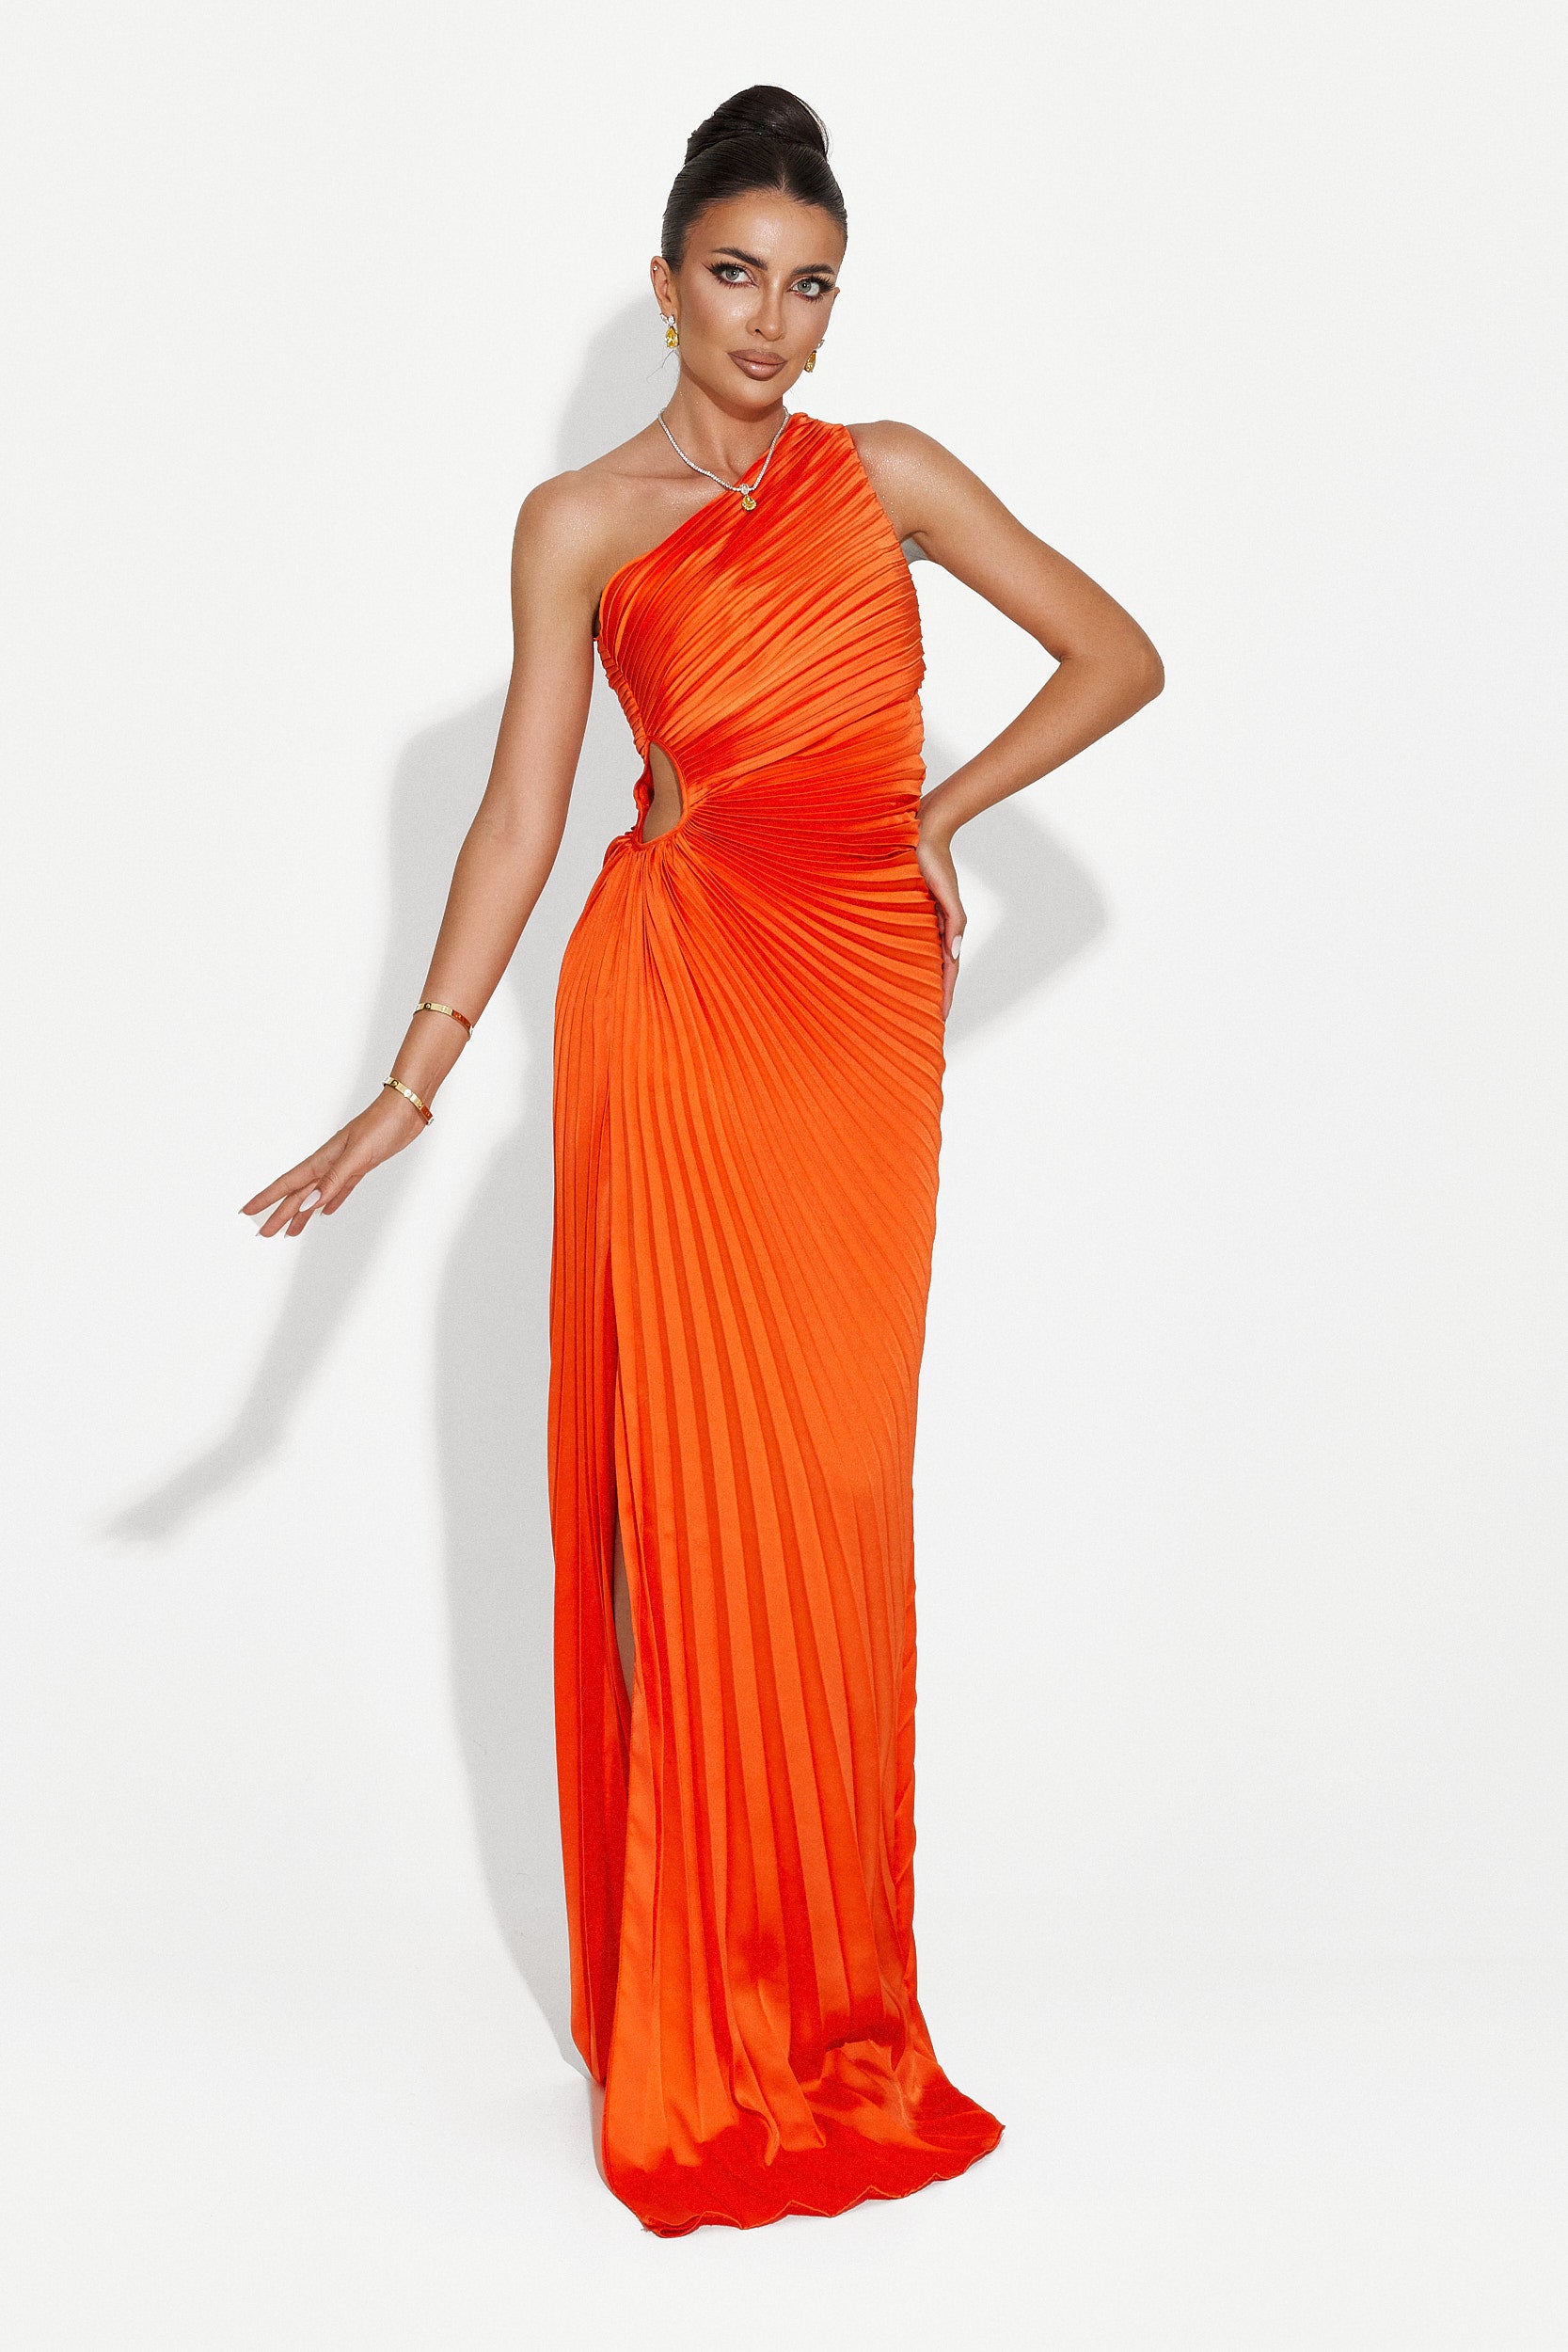 Sanjana Bogas hosszú narancssárga női ruha